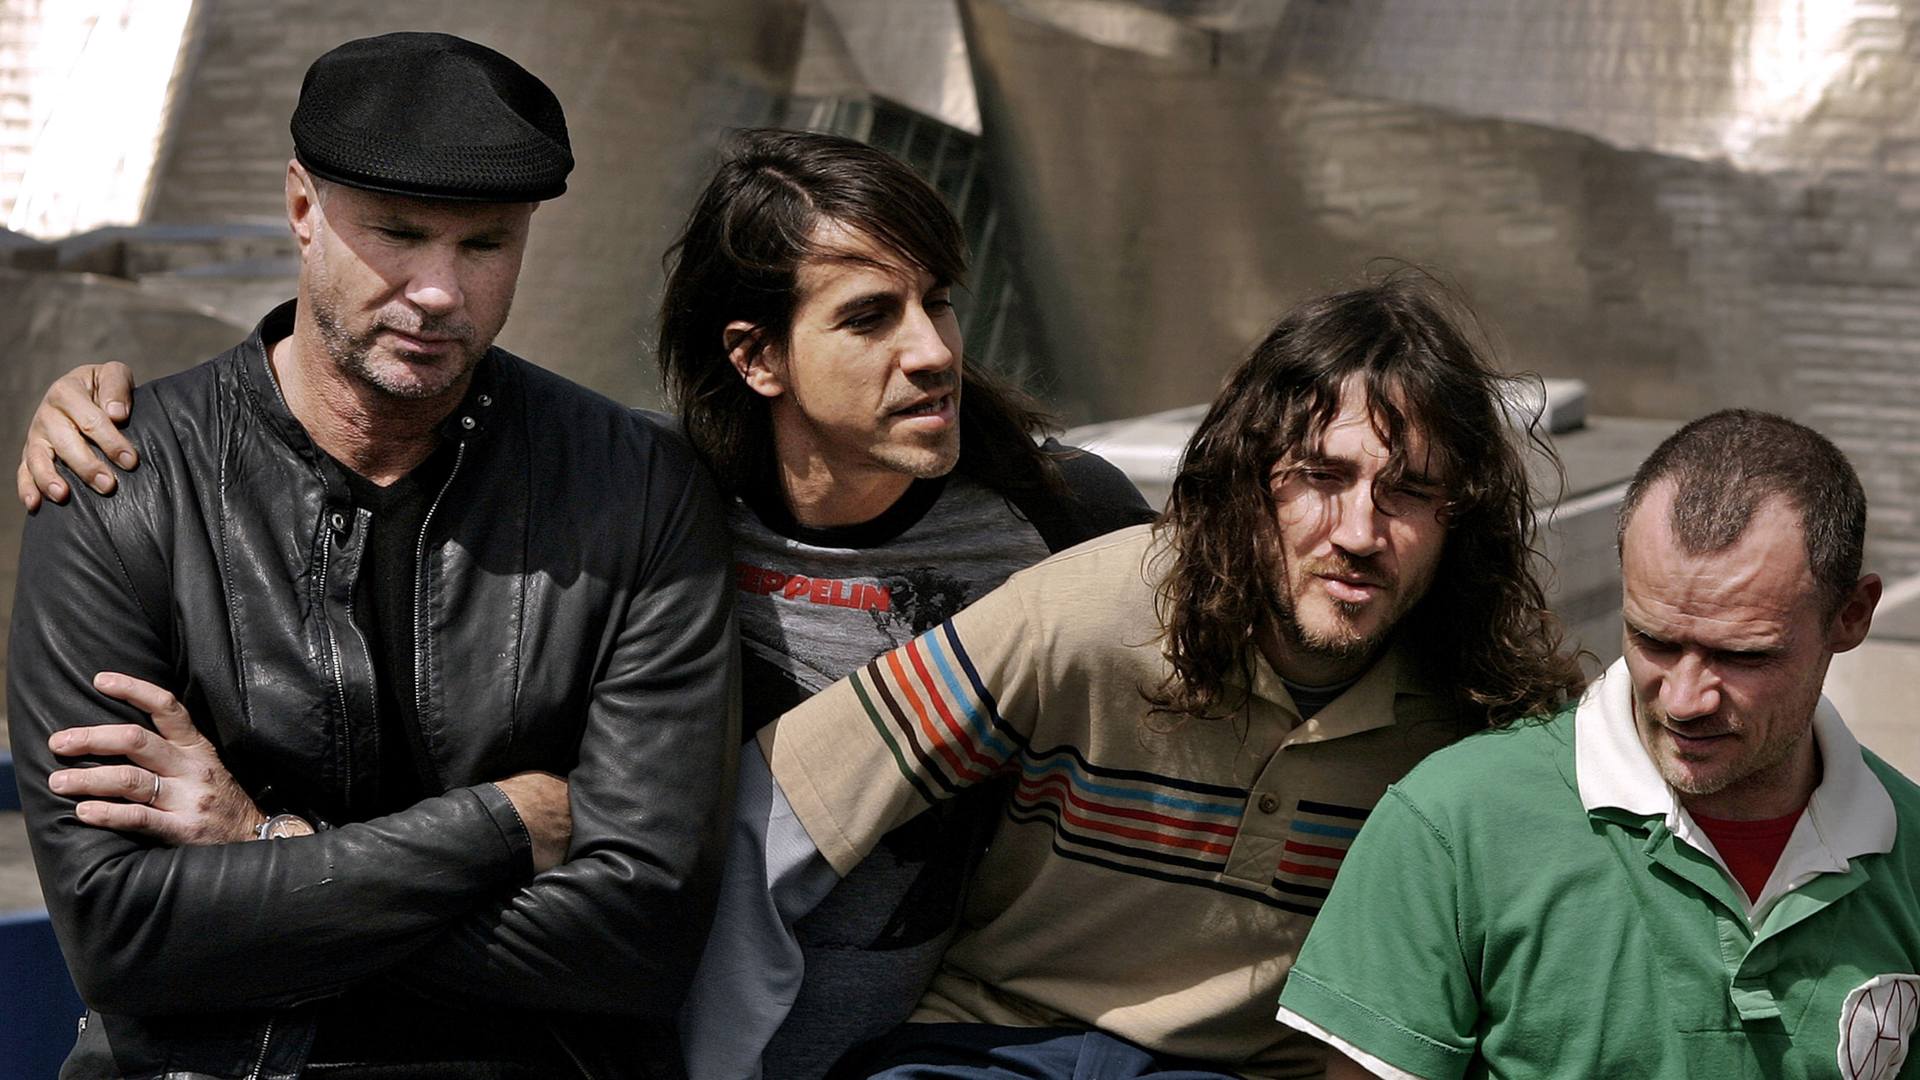 Red Hot Chili Peppers suelta la bomba: John Frusciante vuelve a la banda